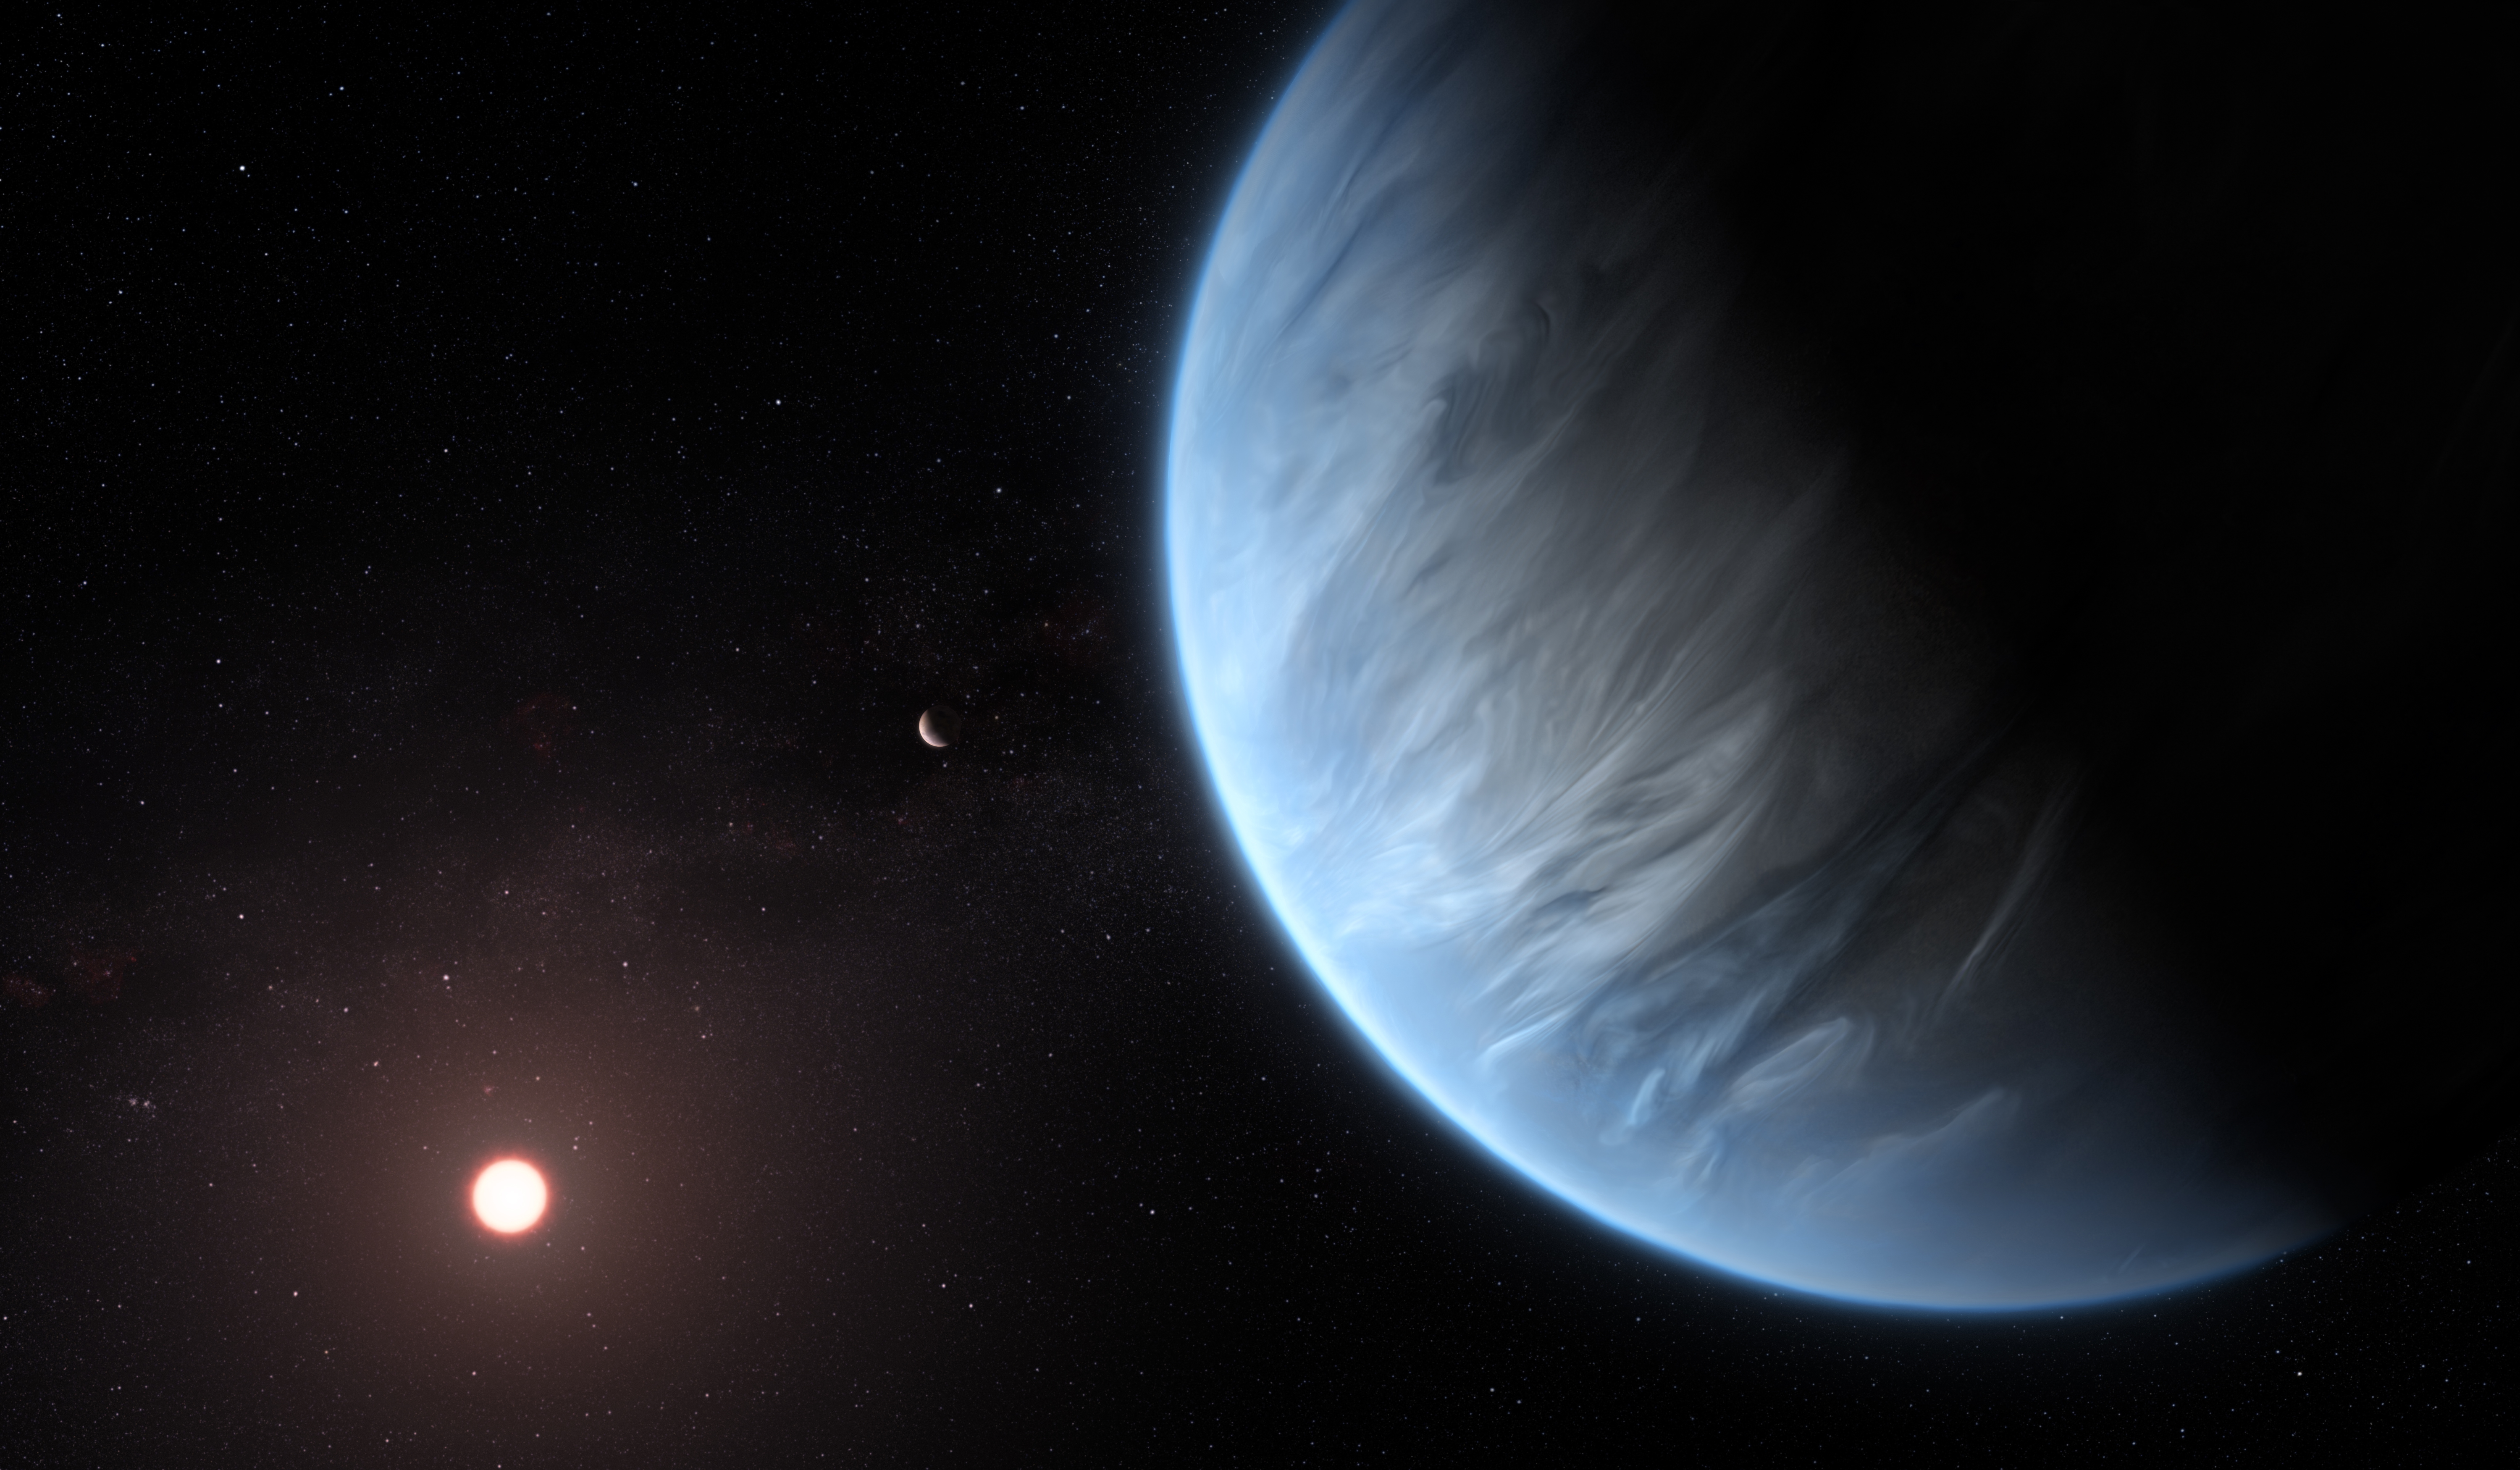 A tavaly felfedezett K2-18b exobolygó fantáziarajza